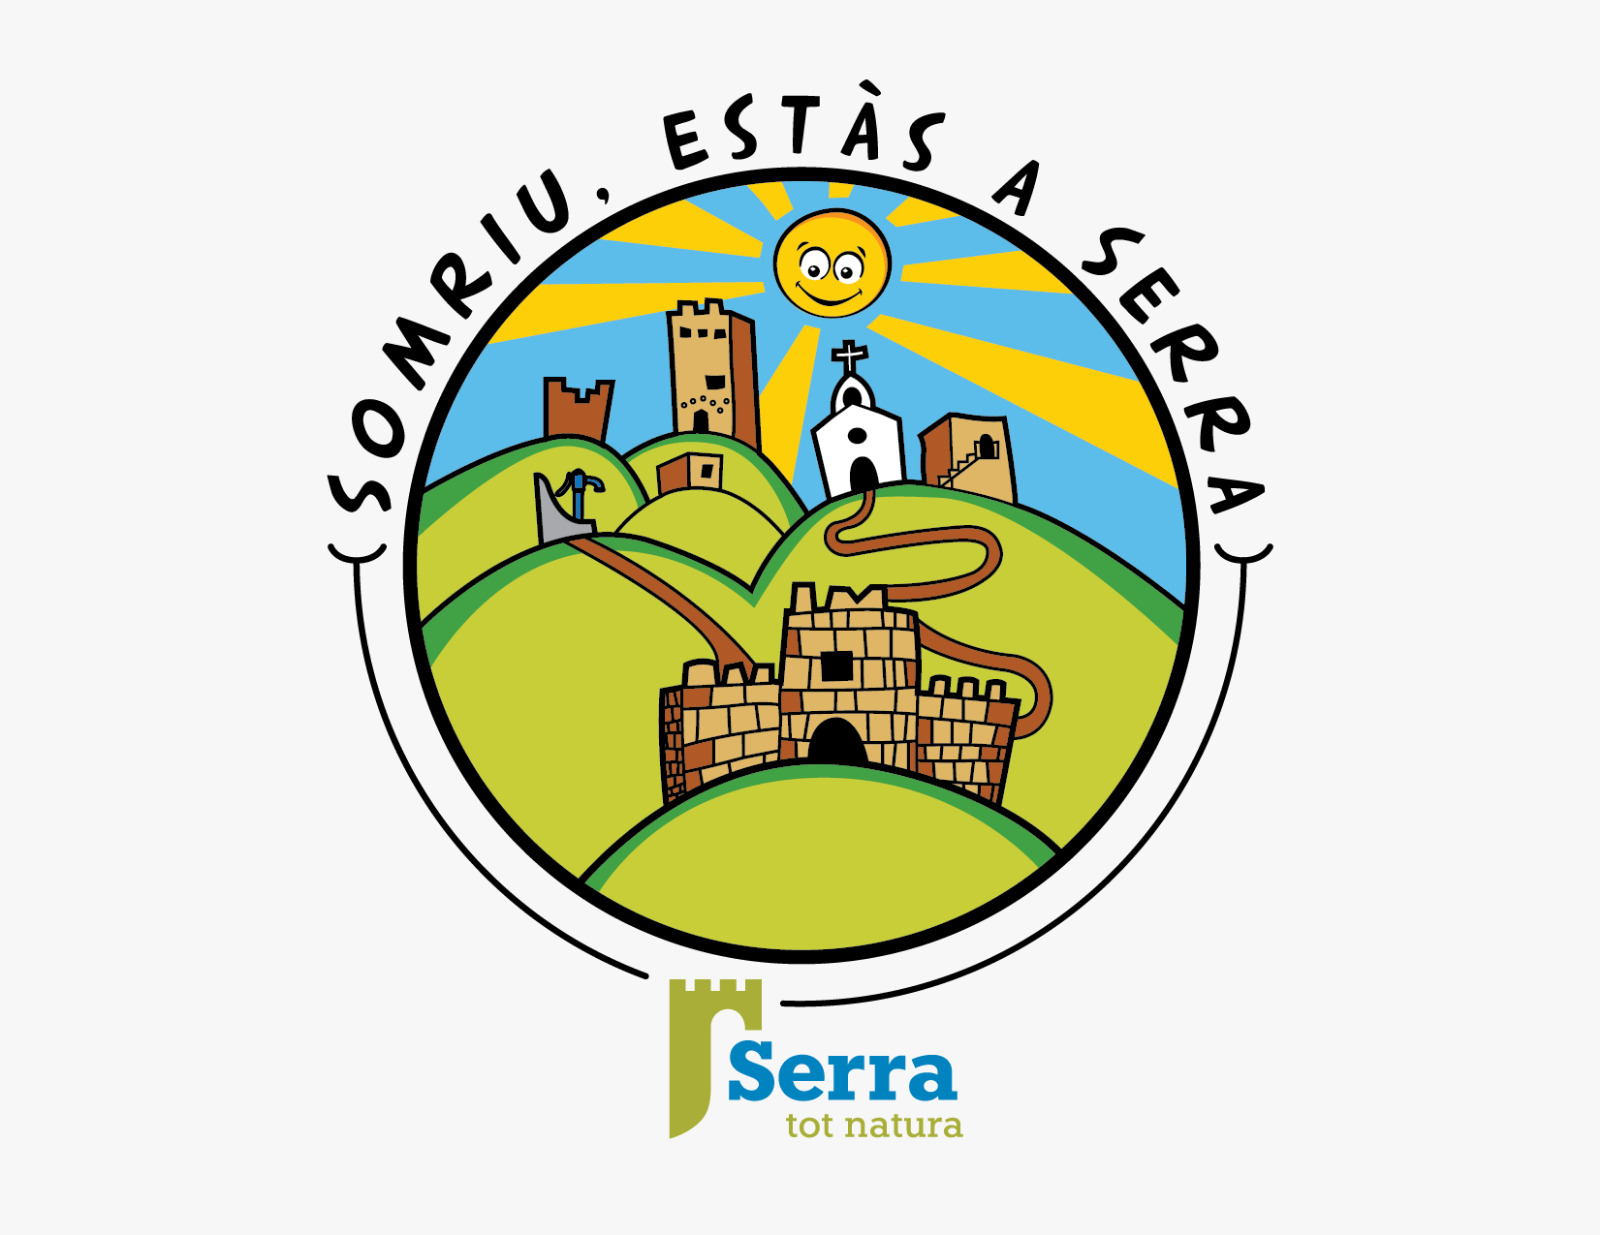 Serra lanza un eslogan para dar apoyo al posicionamiento turístico - Serra